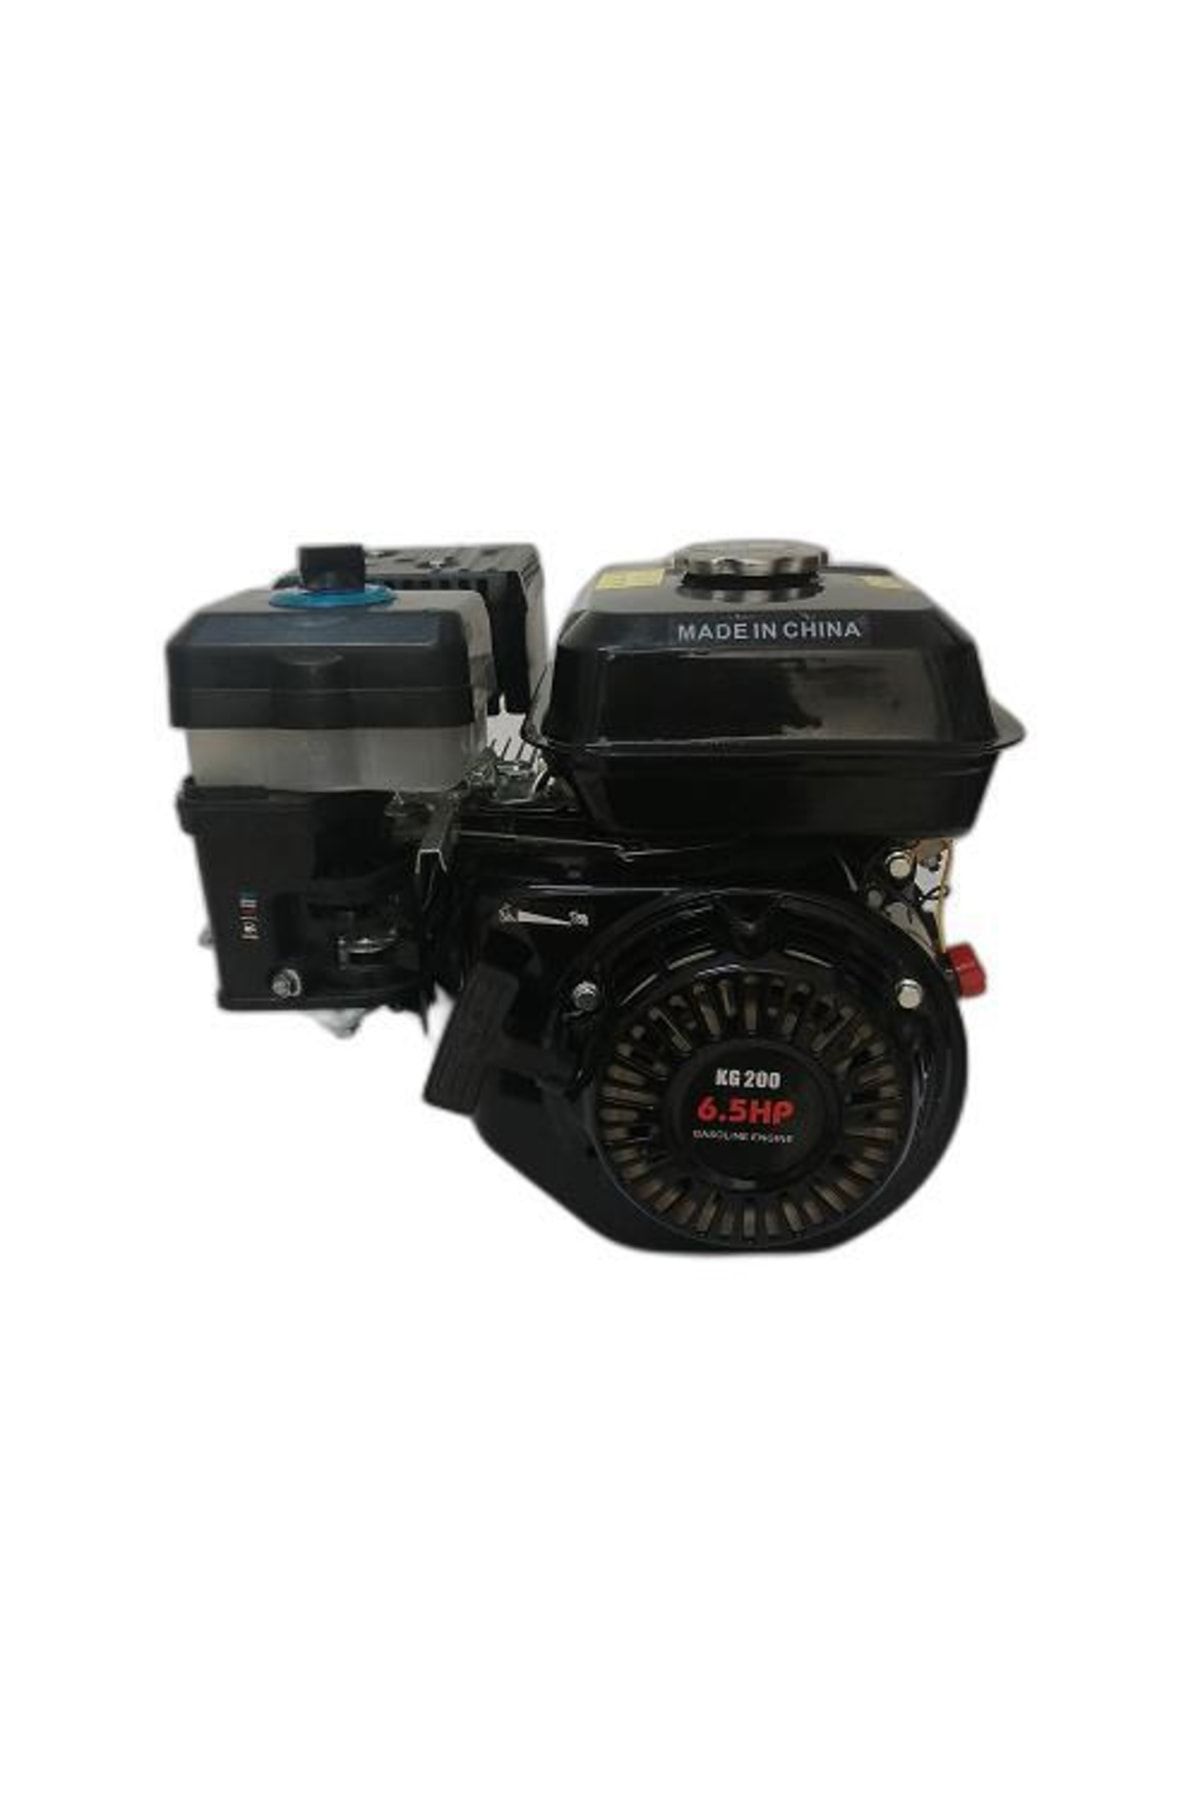 BALATLI Kg200 6.5 Hp Yağ Filtreli Motor Yivli ve Dişli